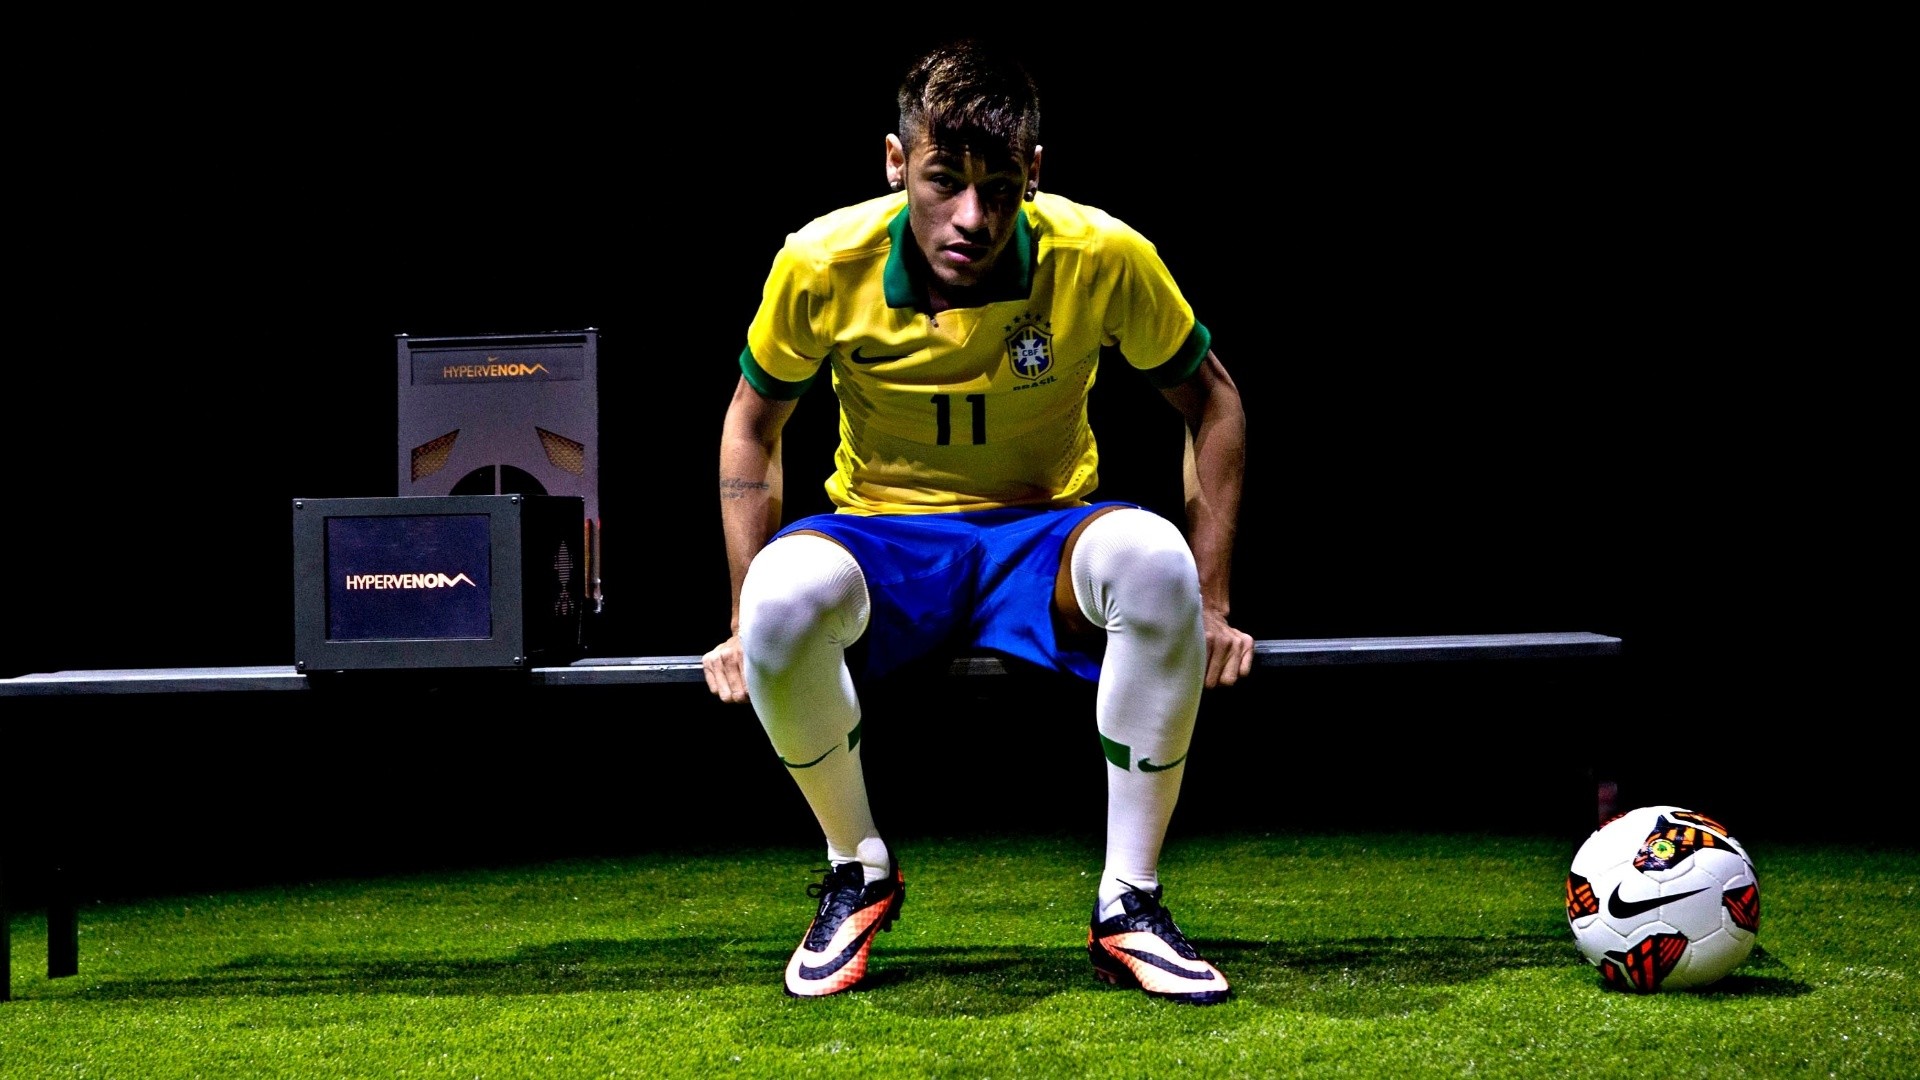 Cool Neymar Wallpapers HD | PixelsTalk.Net